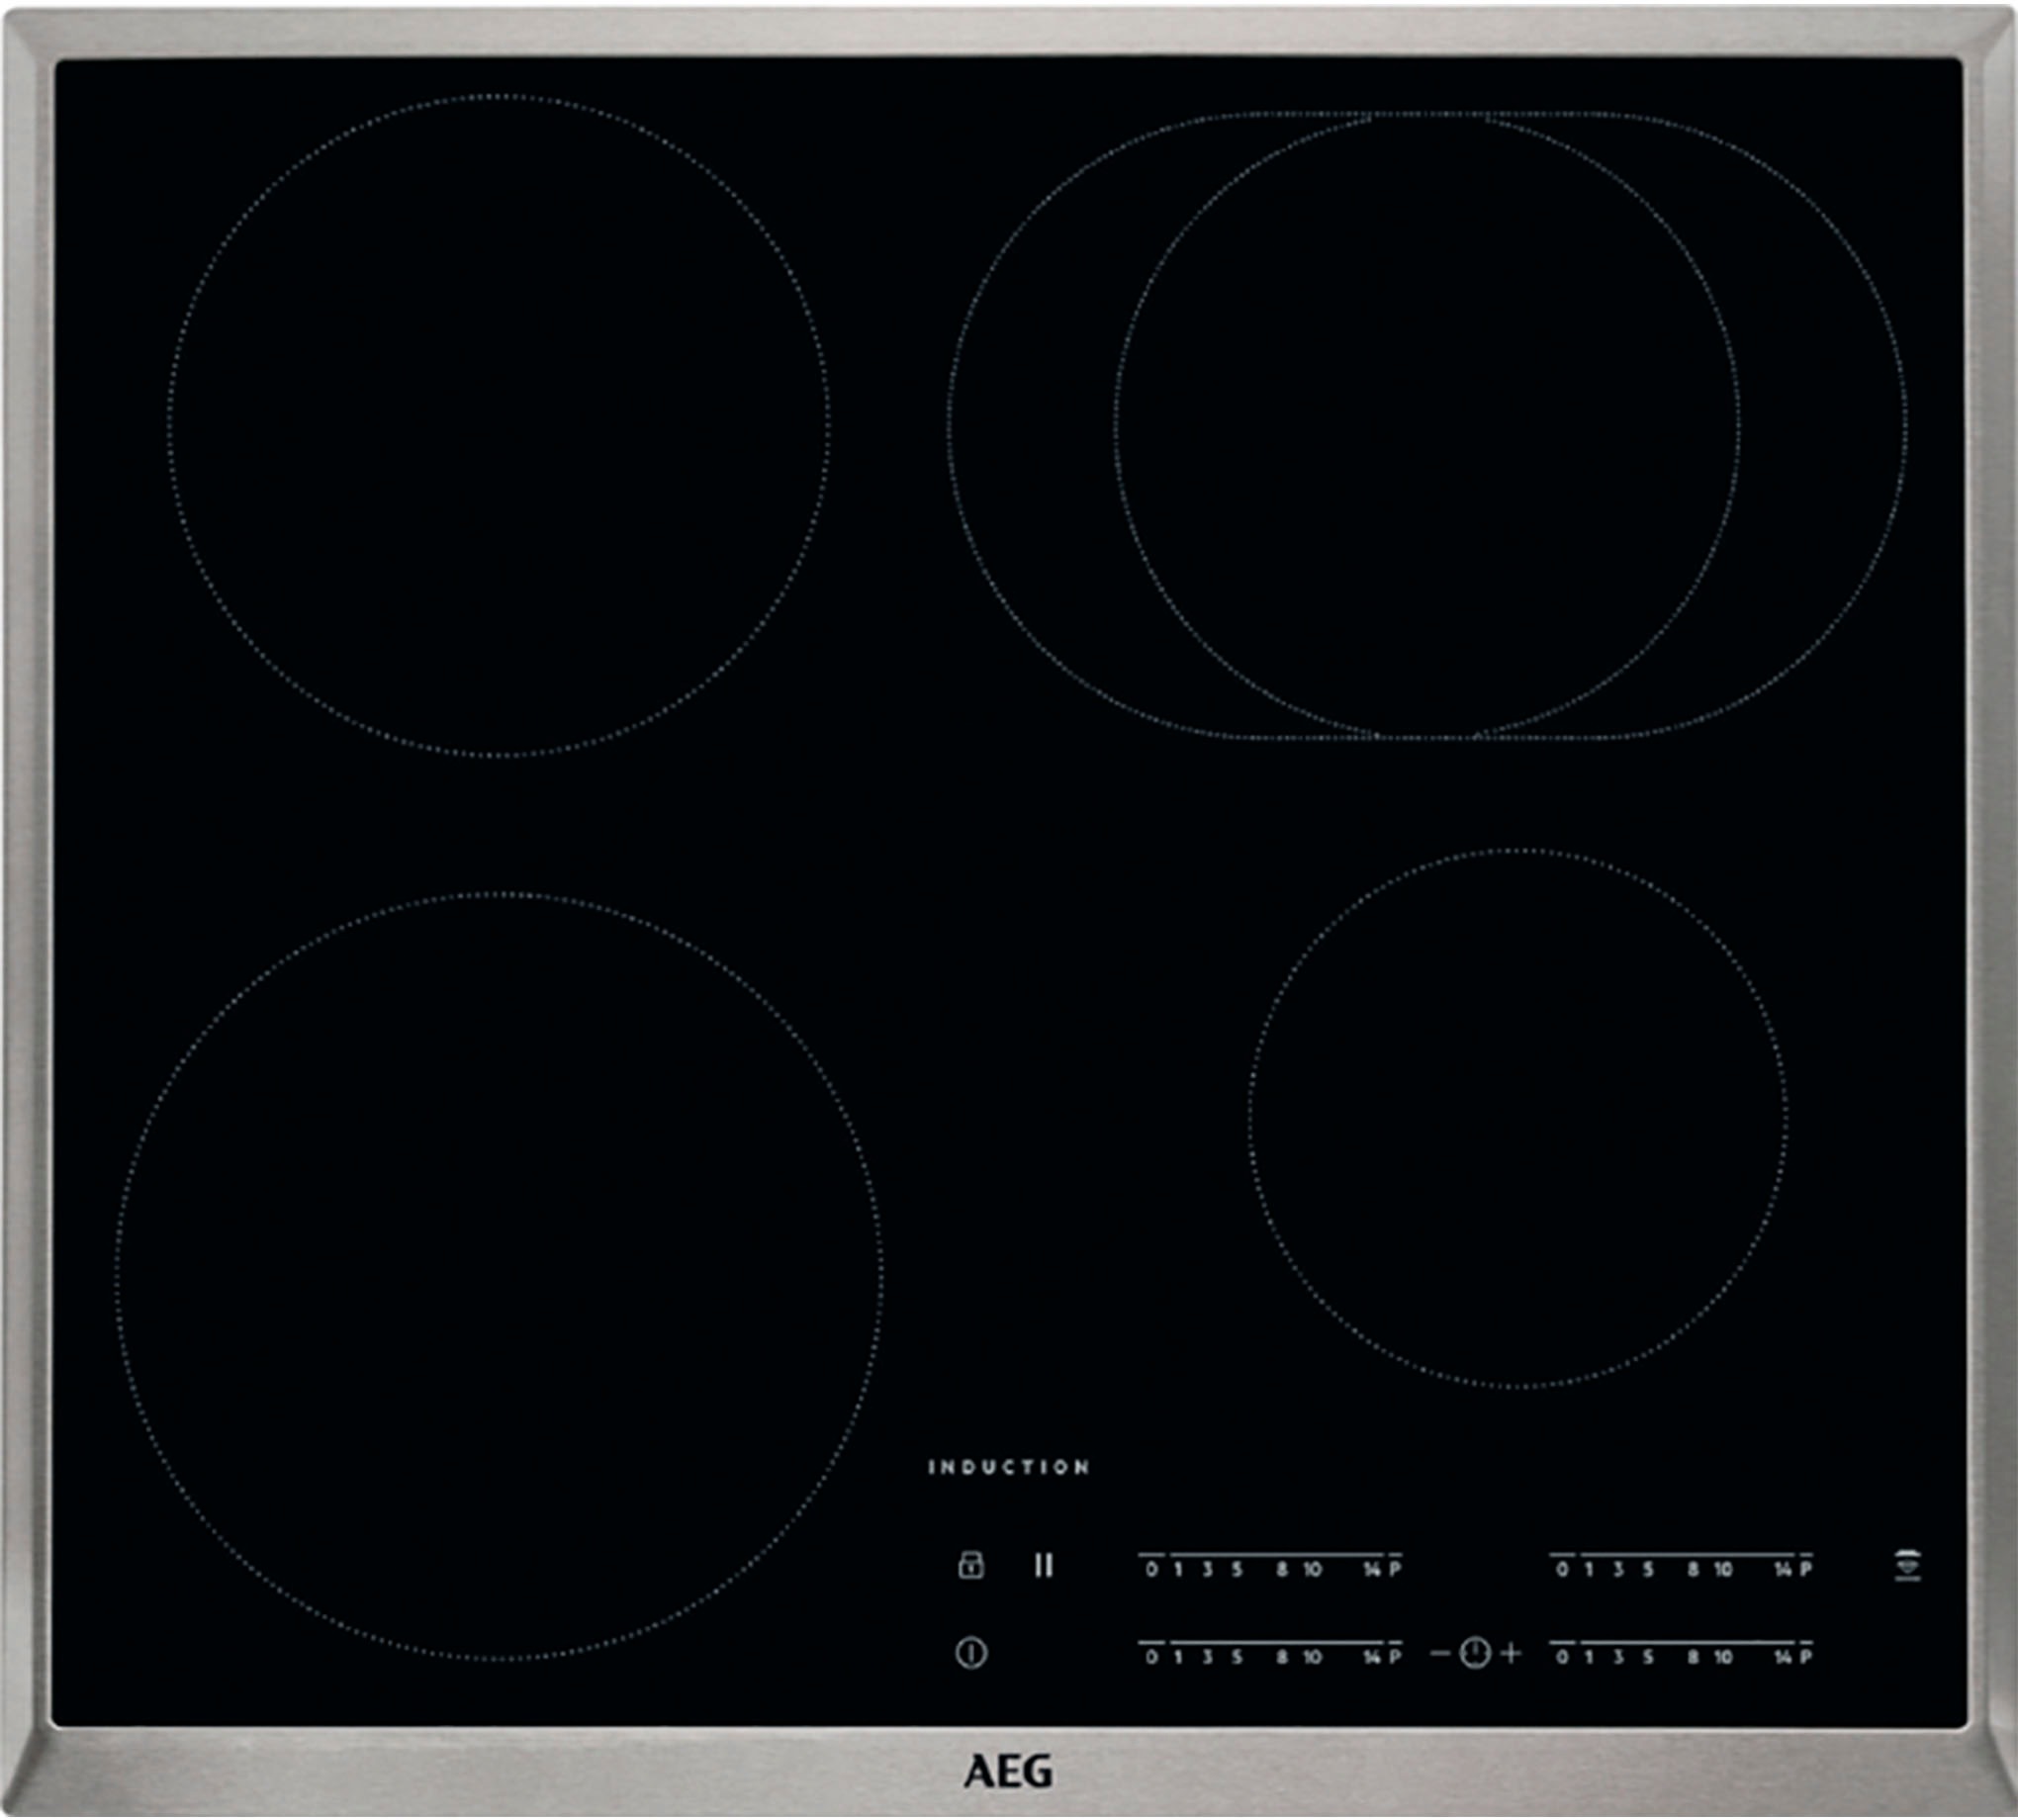 nobilia® Küchenzeile »"Structura premium"«, vormontiert, Ausrichtung wählbar, Breite 210 cm, mit E-Geräten